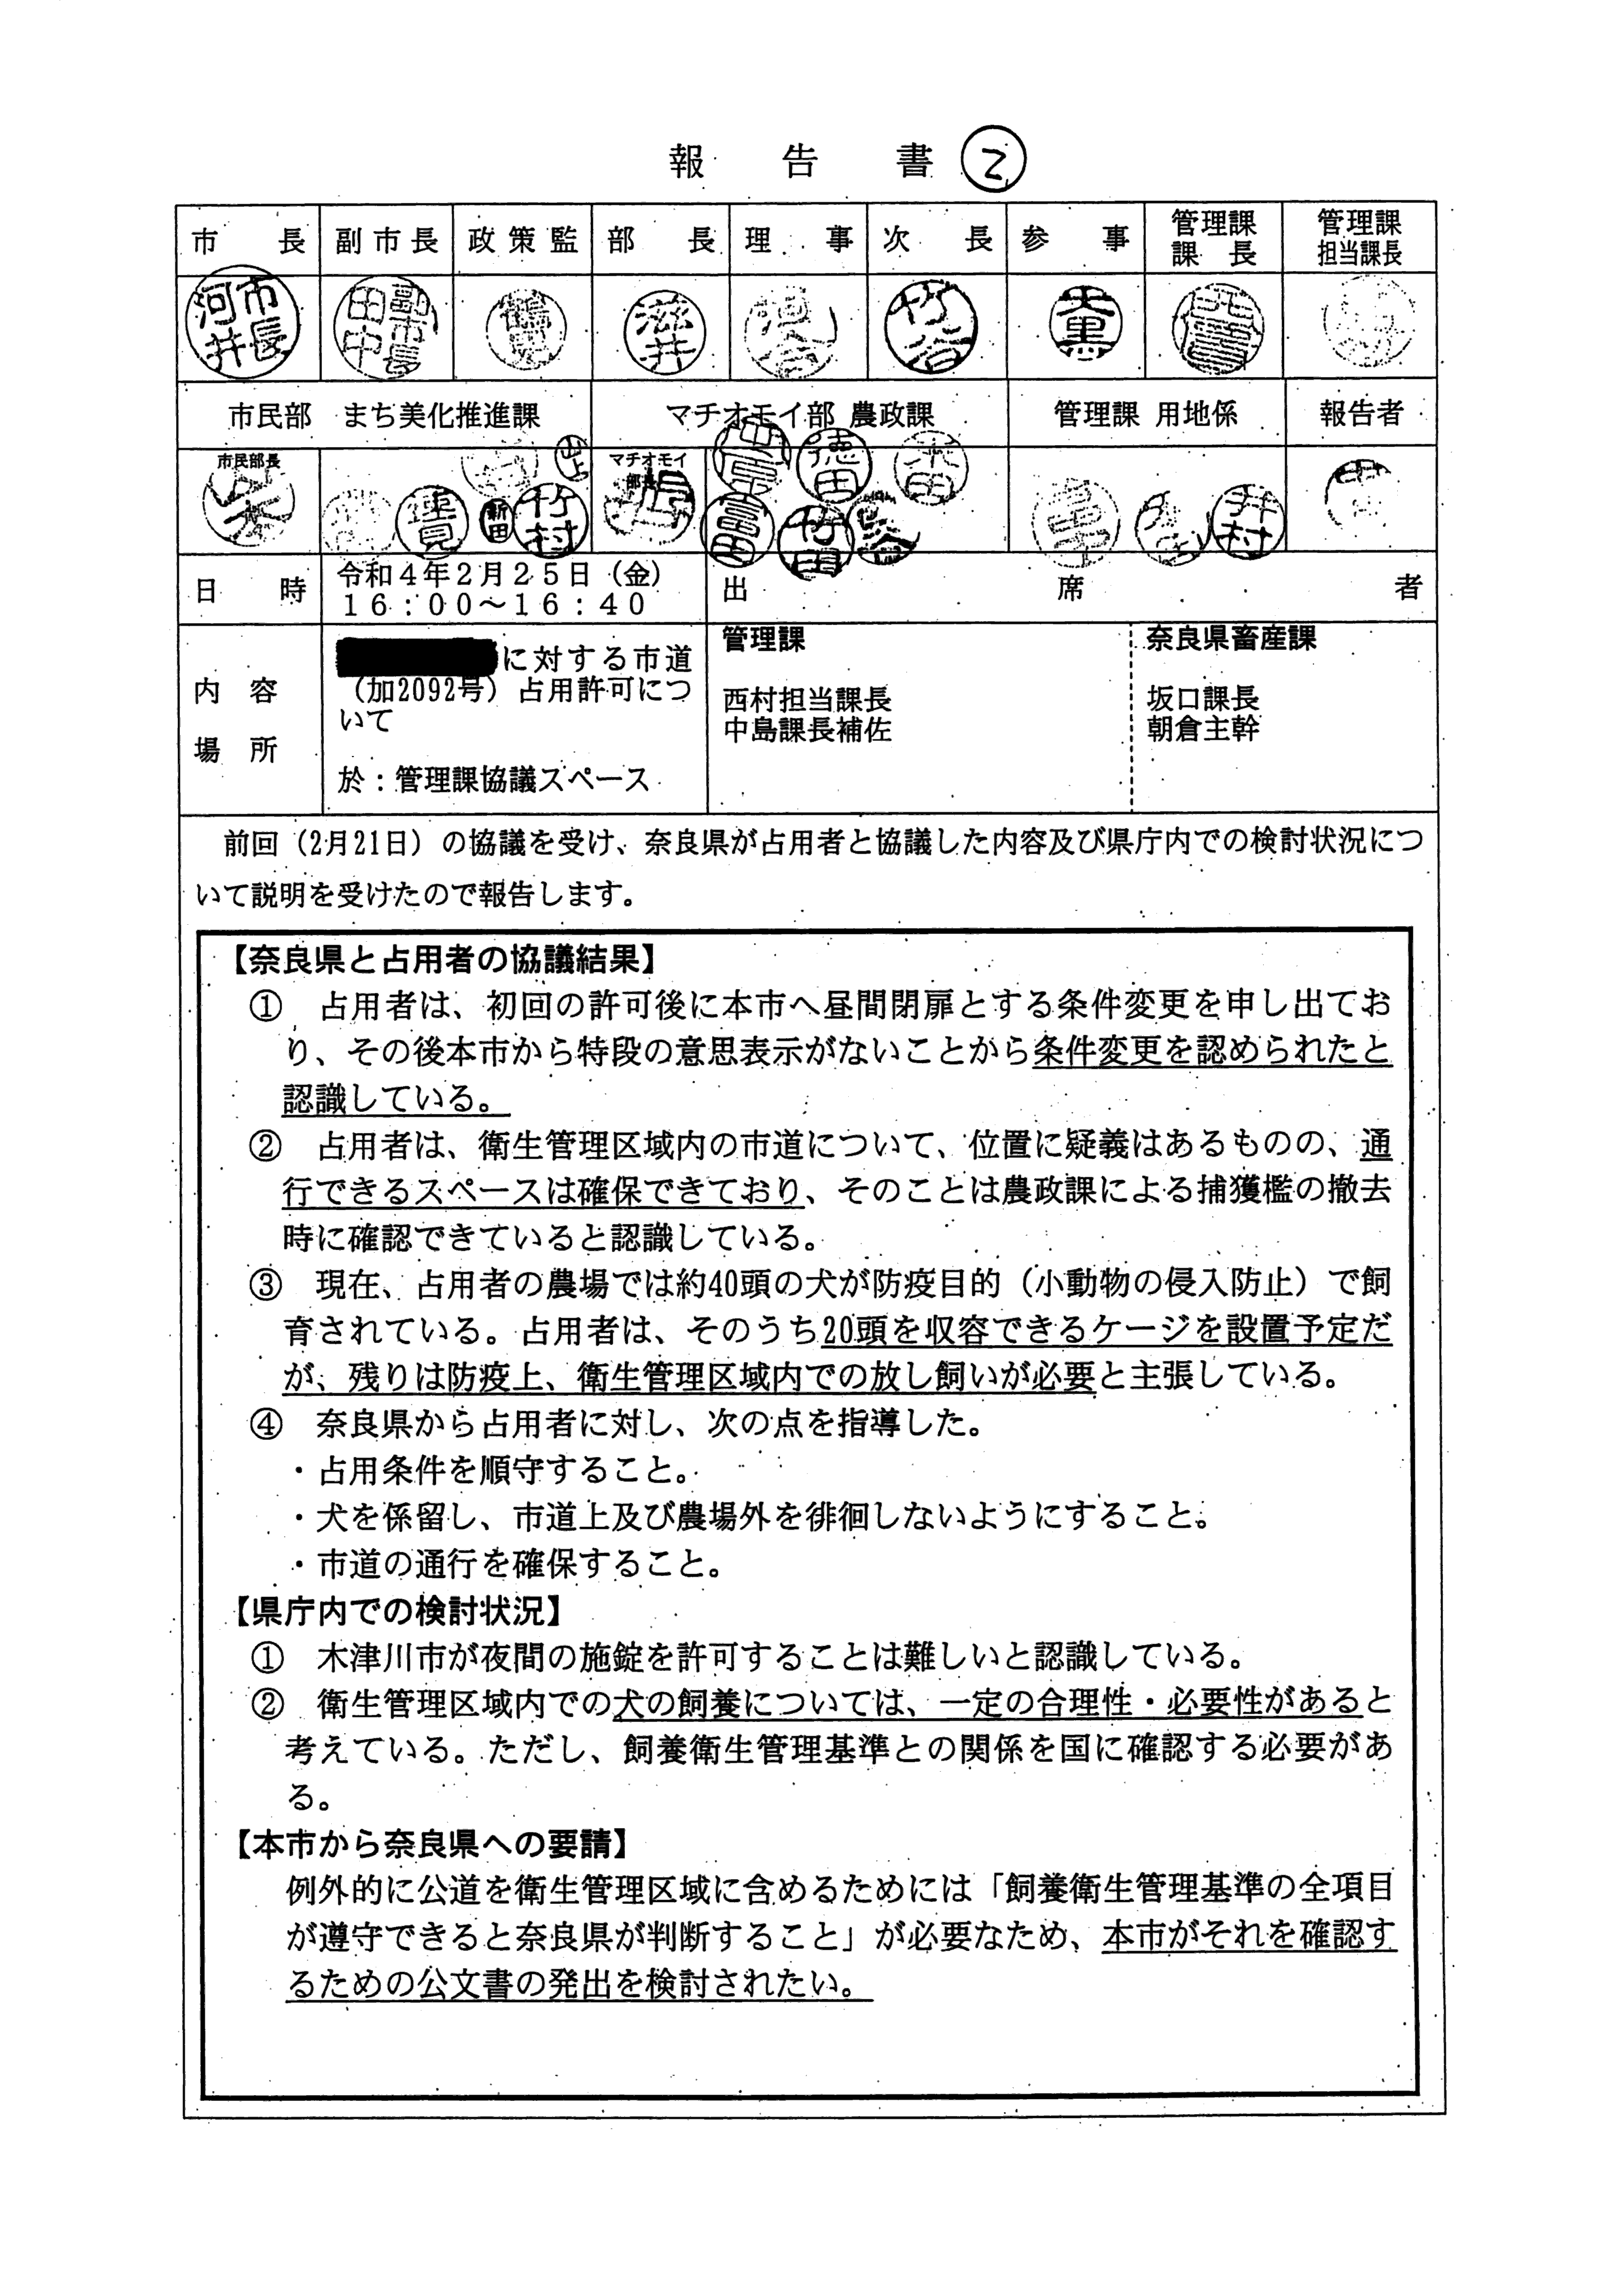 令和4(2022)年2月25日 村田商店に対する市道（加2092号）占用許可について（奈良県との協議）-01